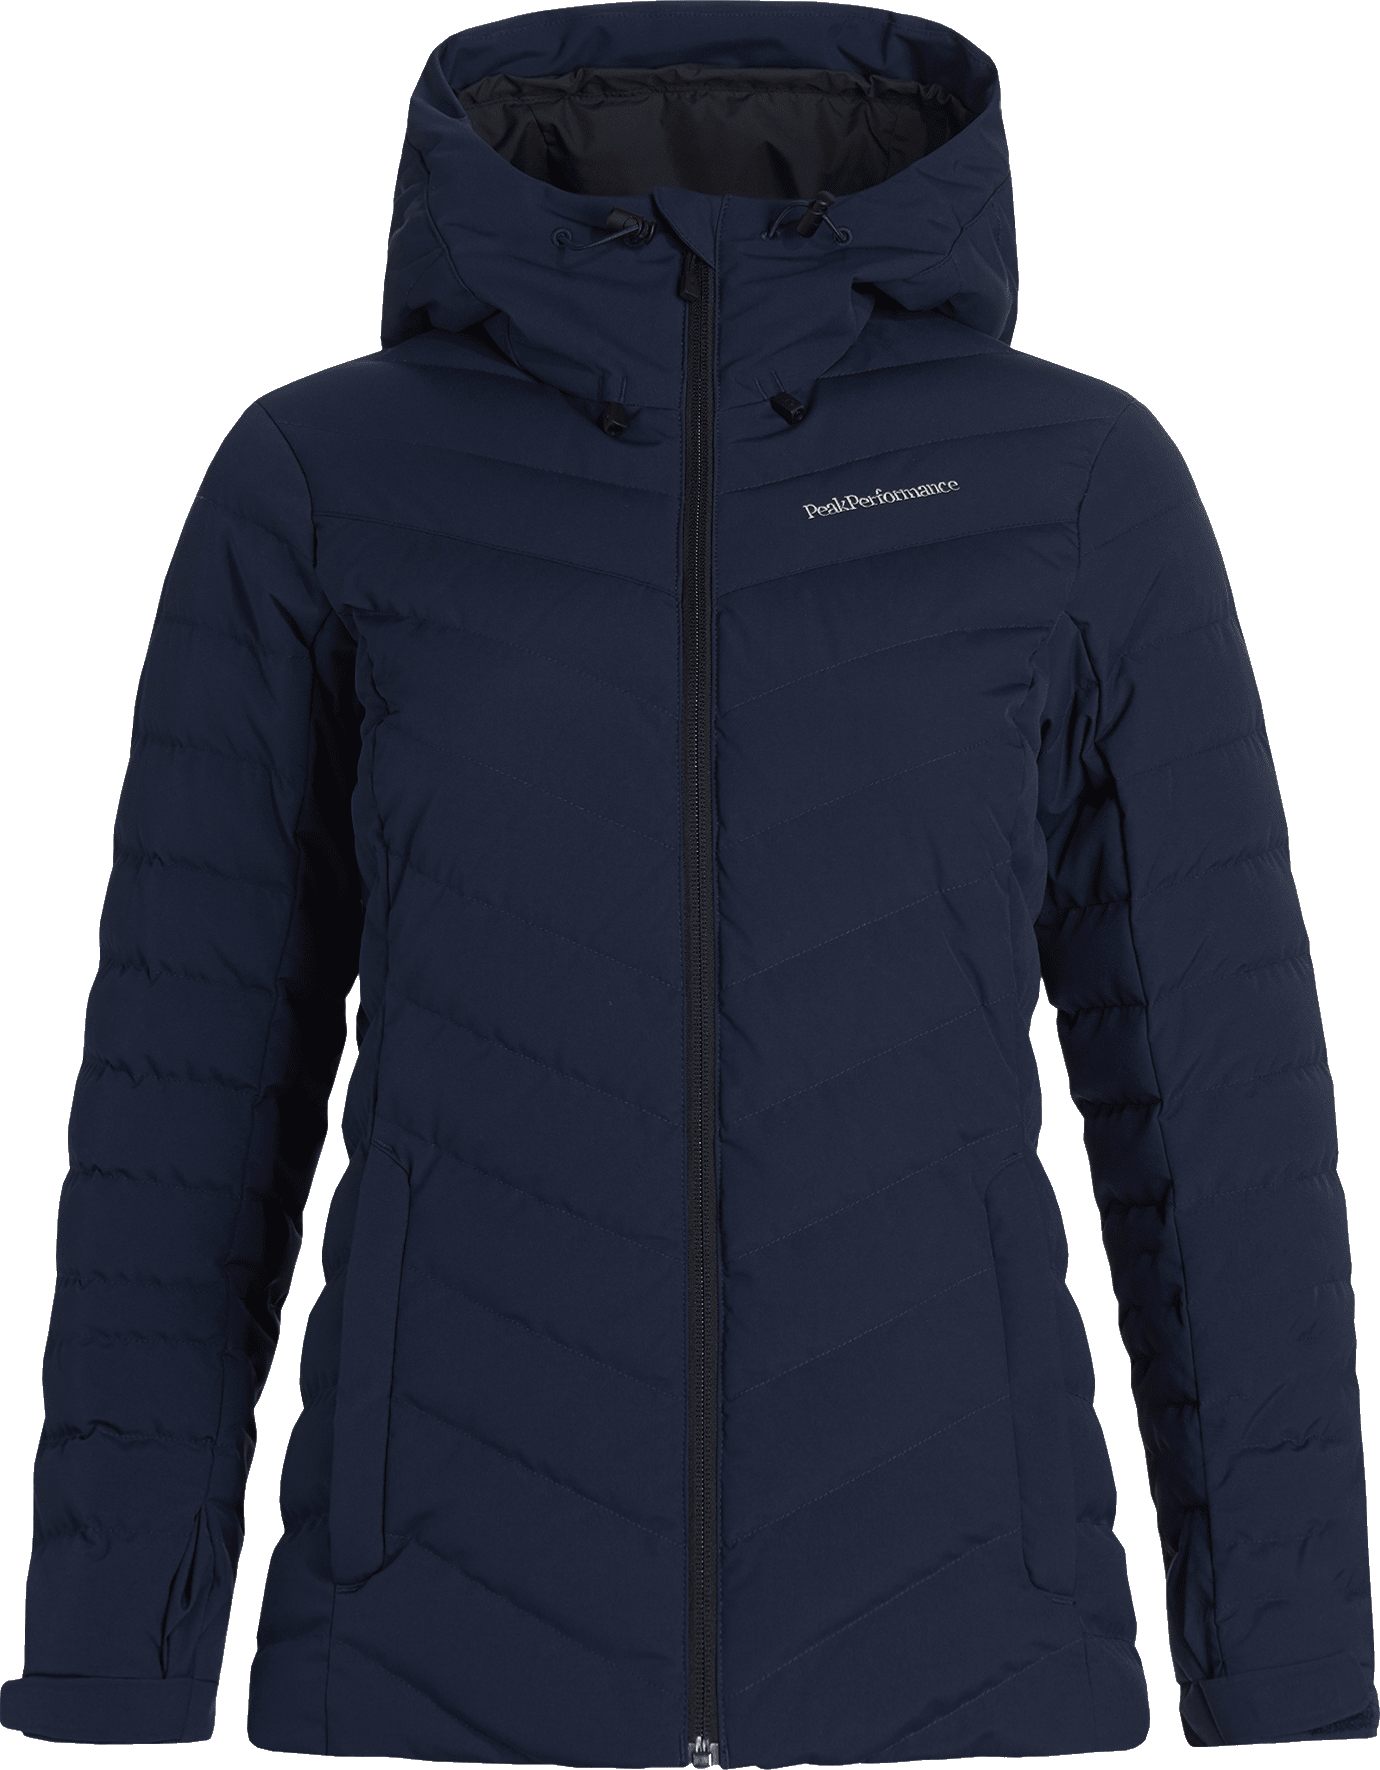 Buy Peak Performance Women's Frost Ski Jacket from